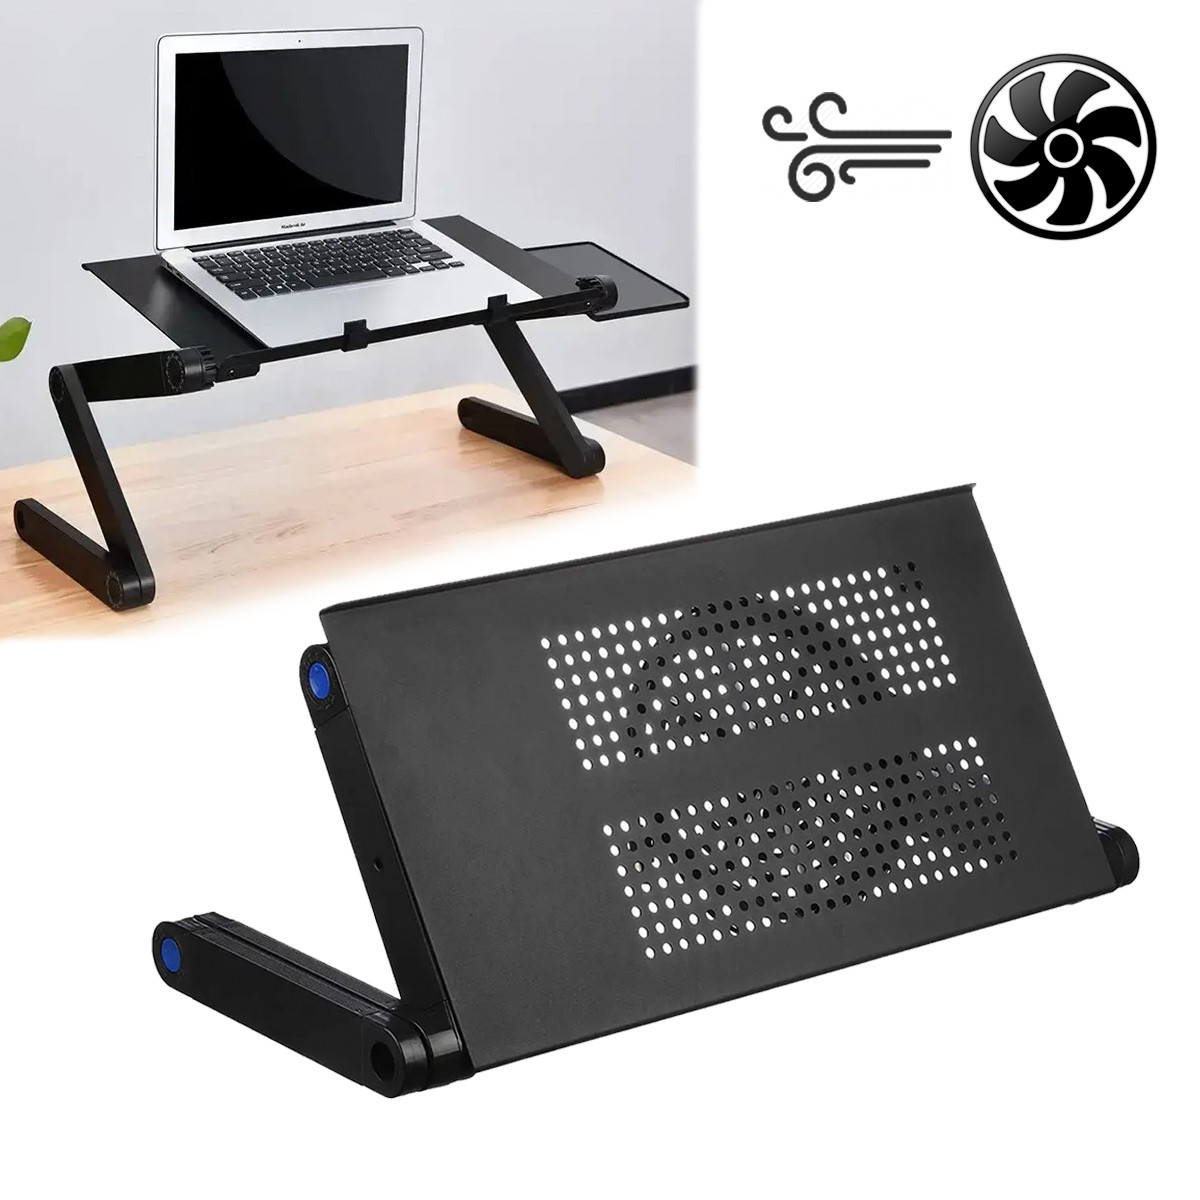 Столик для ноутбука Laptop table T6 охолоджувальна підставка для ноутбука, столик трансформер с 1 вентилятором